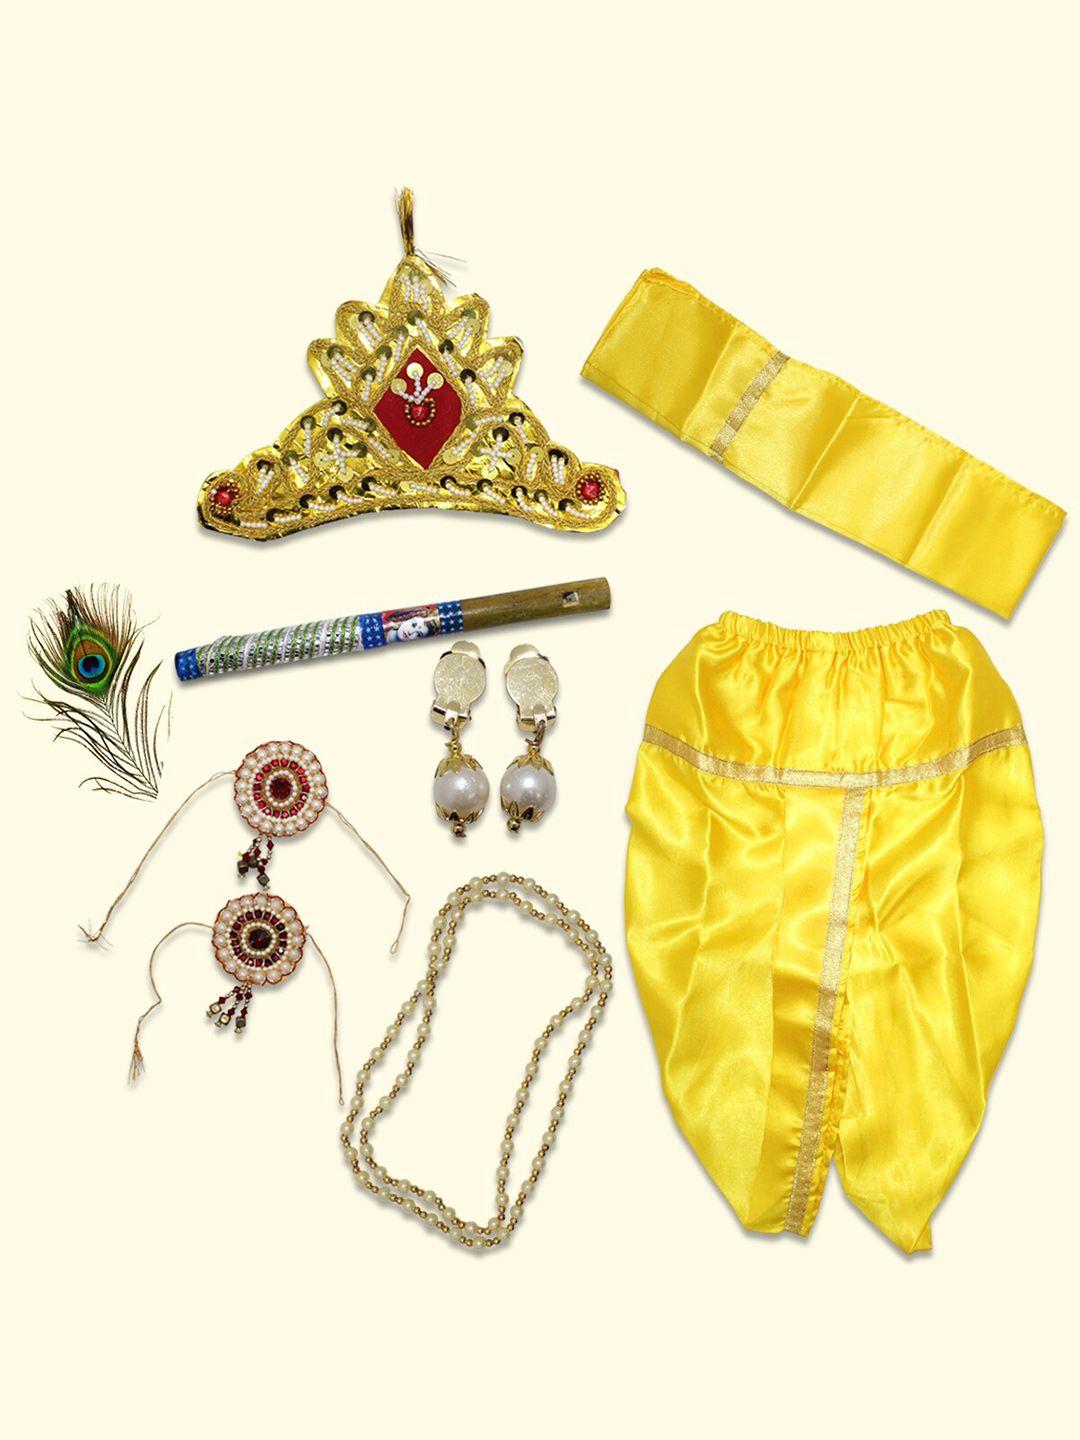 born-babies-unisex-krishna-costume-ethnic-wear-cotton-clothing-set